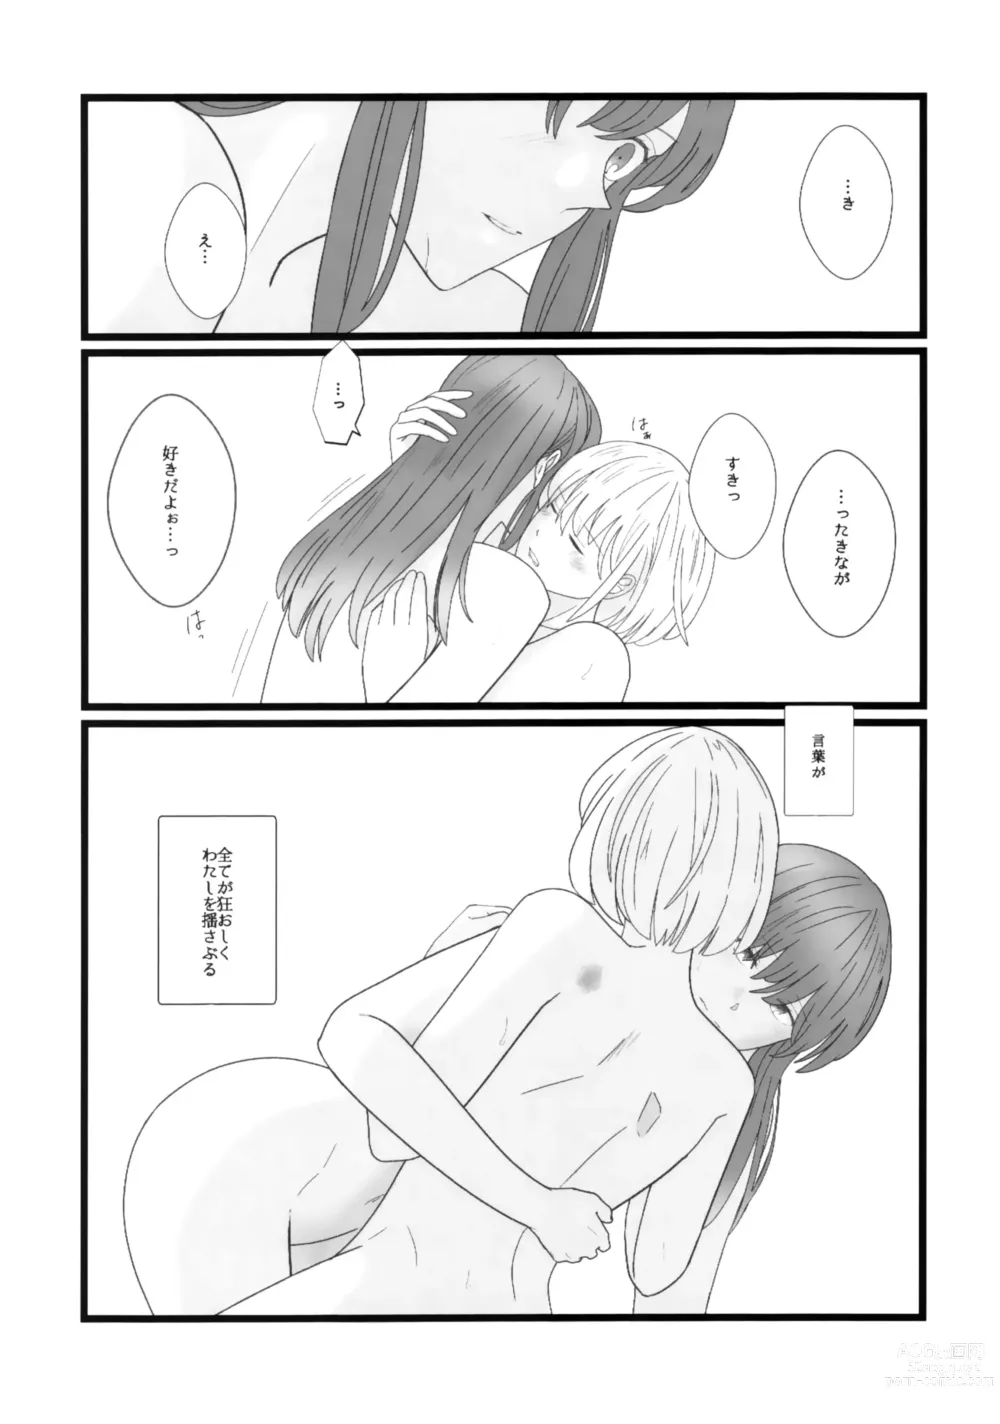 Page 23 of doujinshi Takina to Chisato.